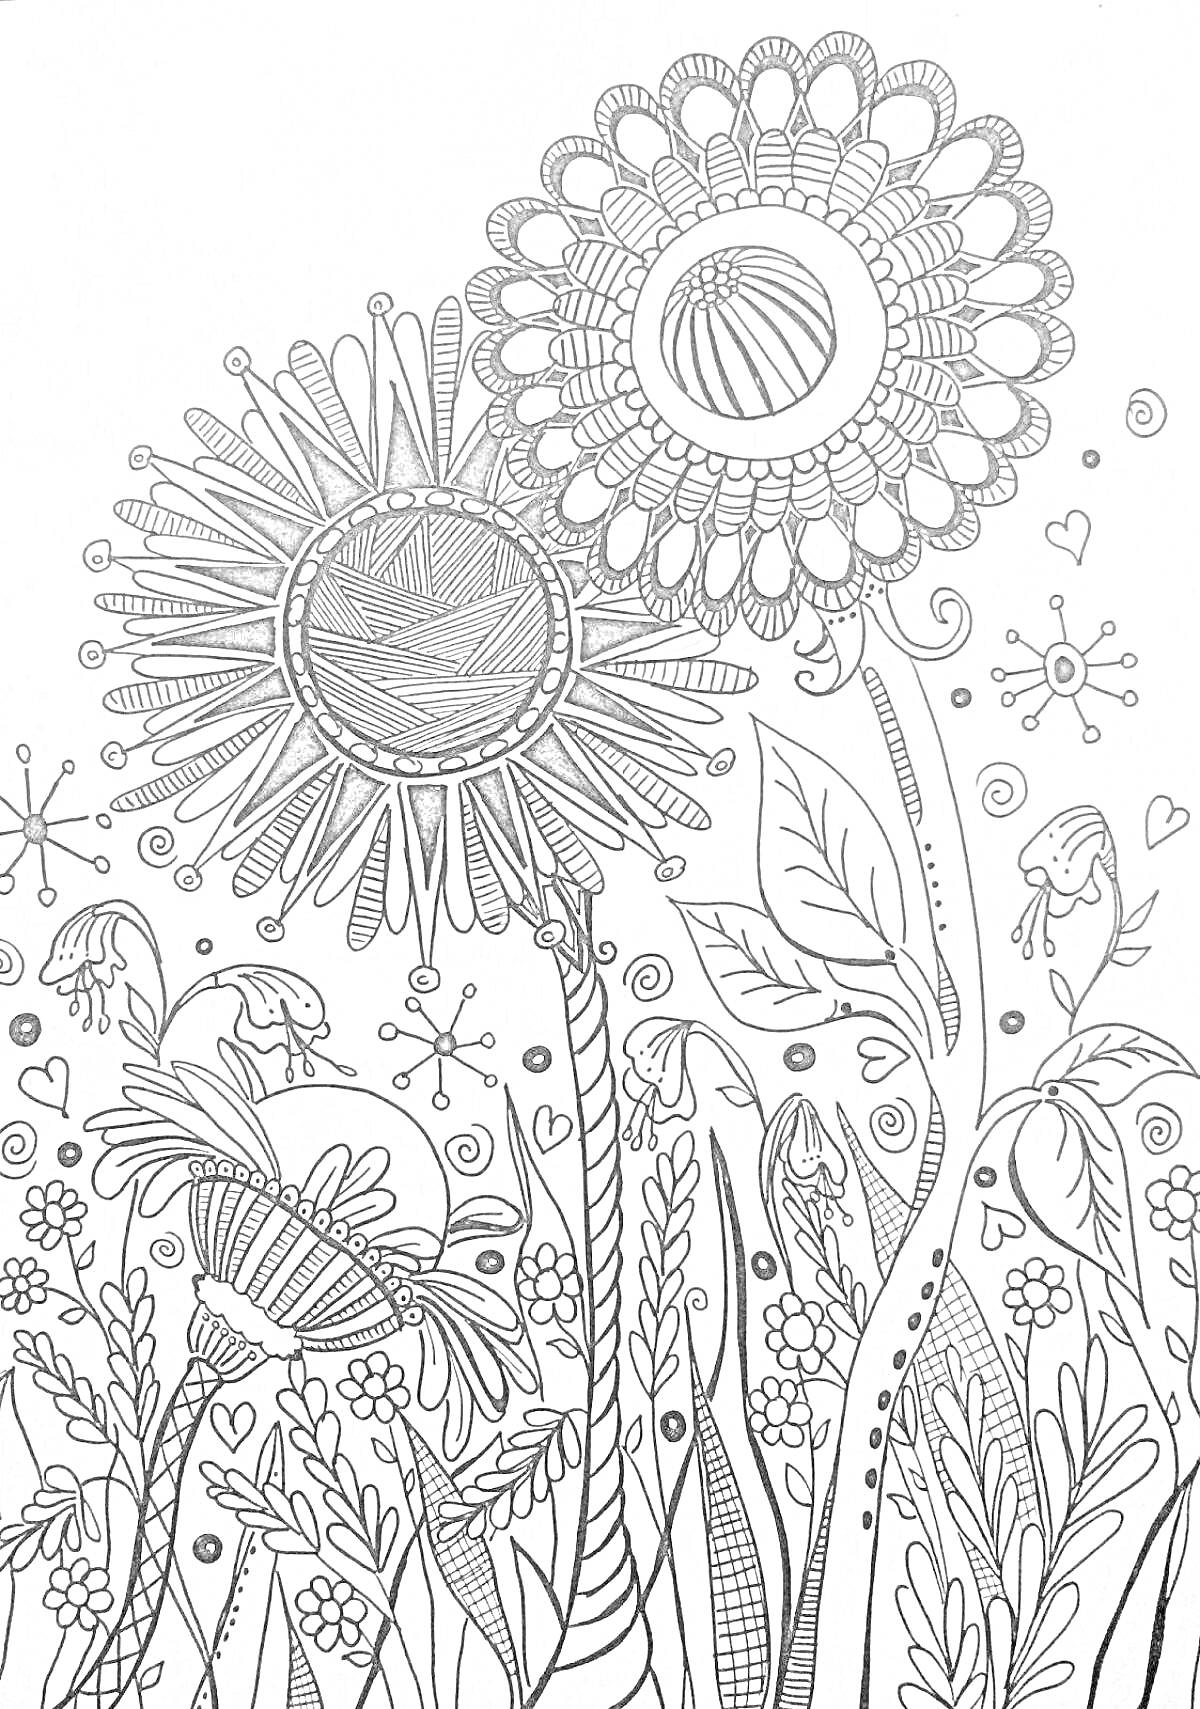 Раскраска два больших цветка с множеством мелких деталей, высокие стебли, листья, мелкие цветы на заднем фоне, насекомые и абстрактные элементы